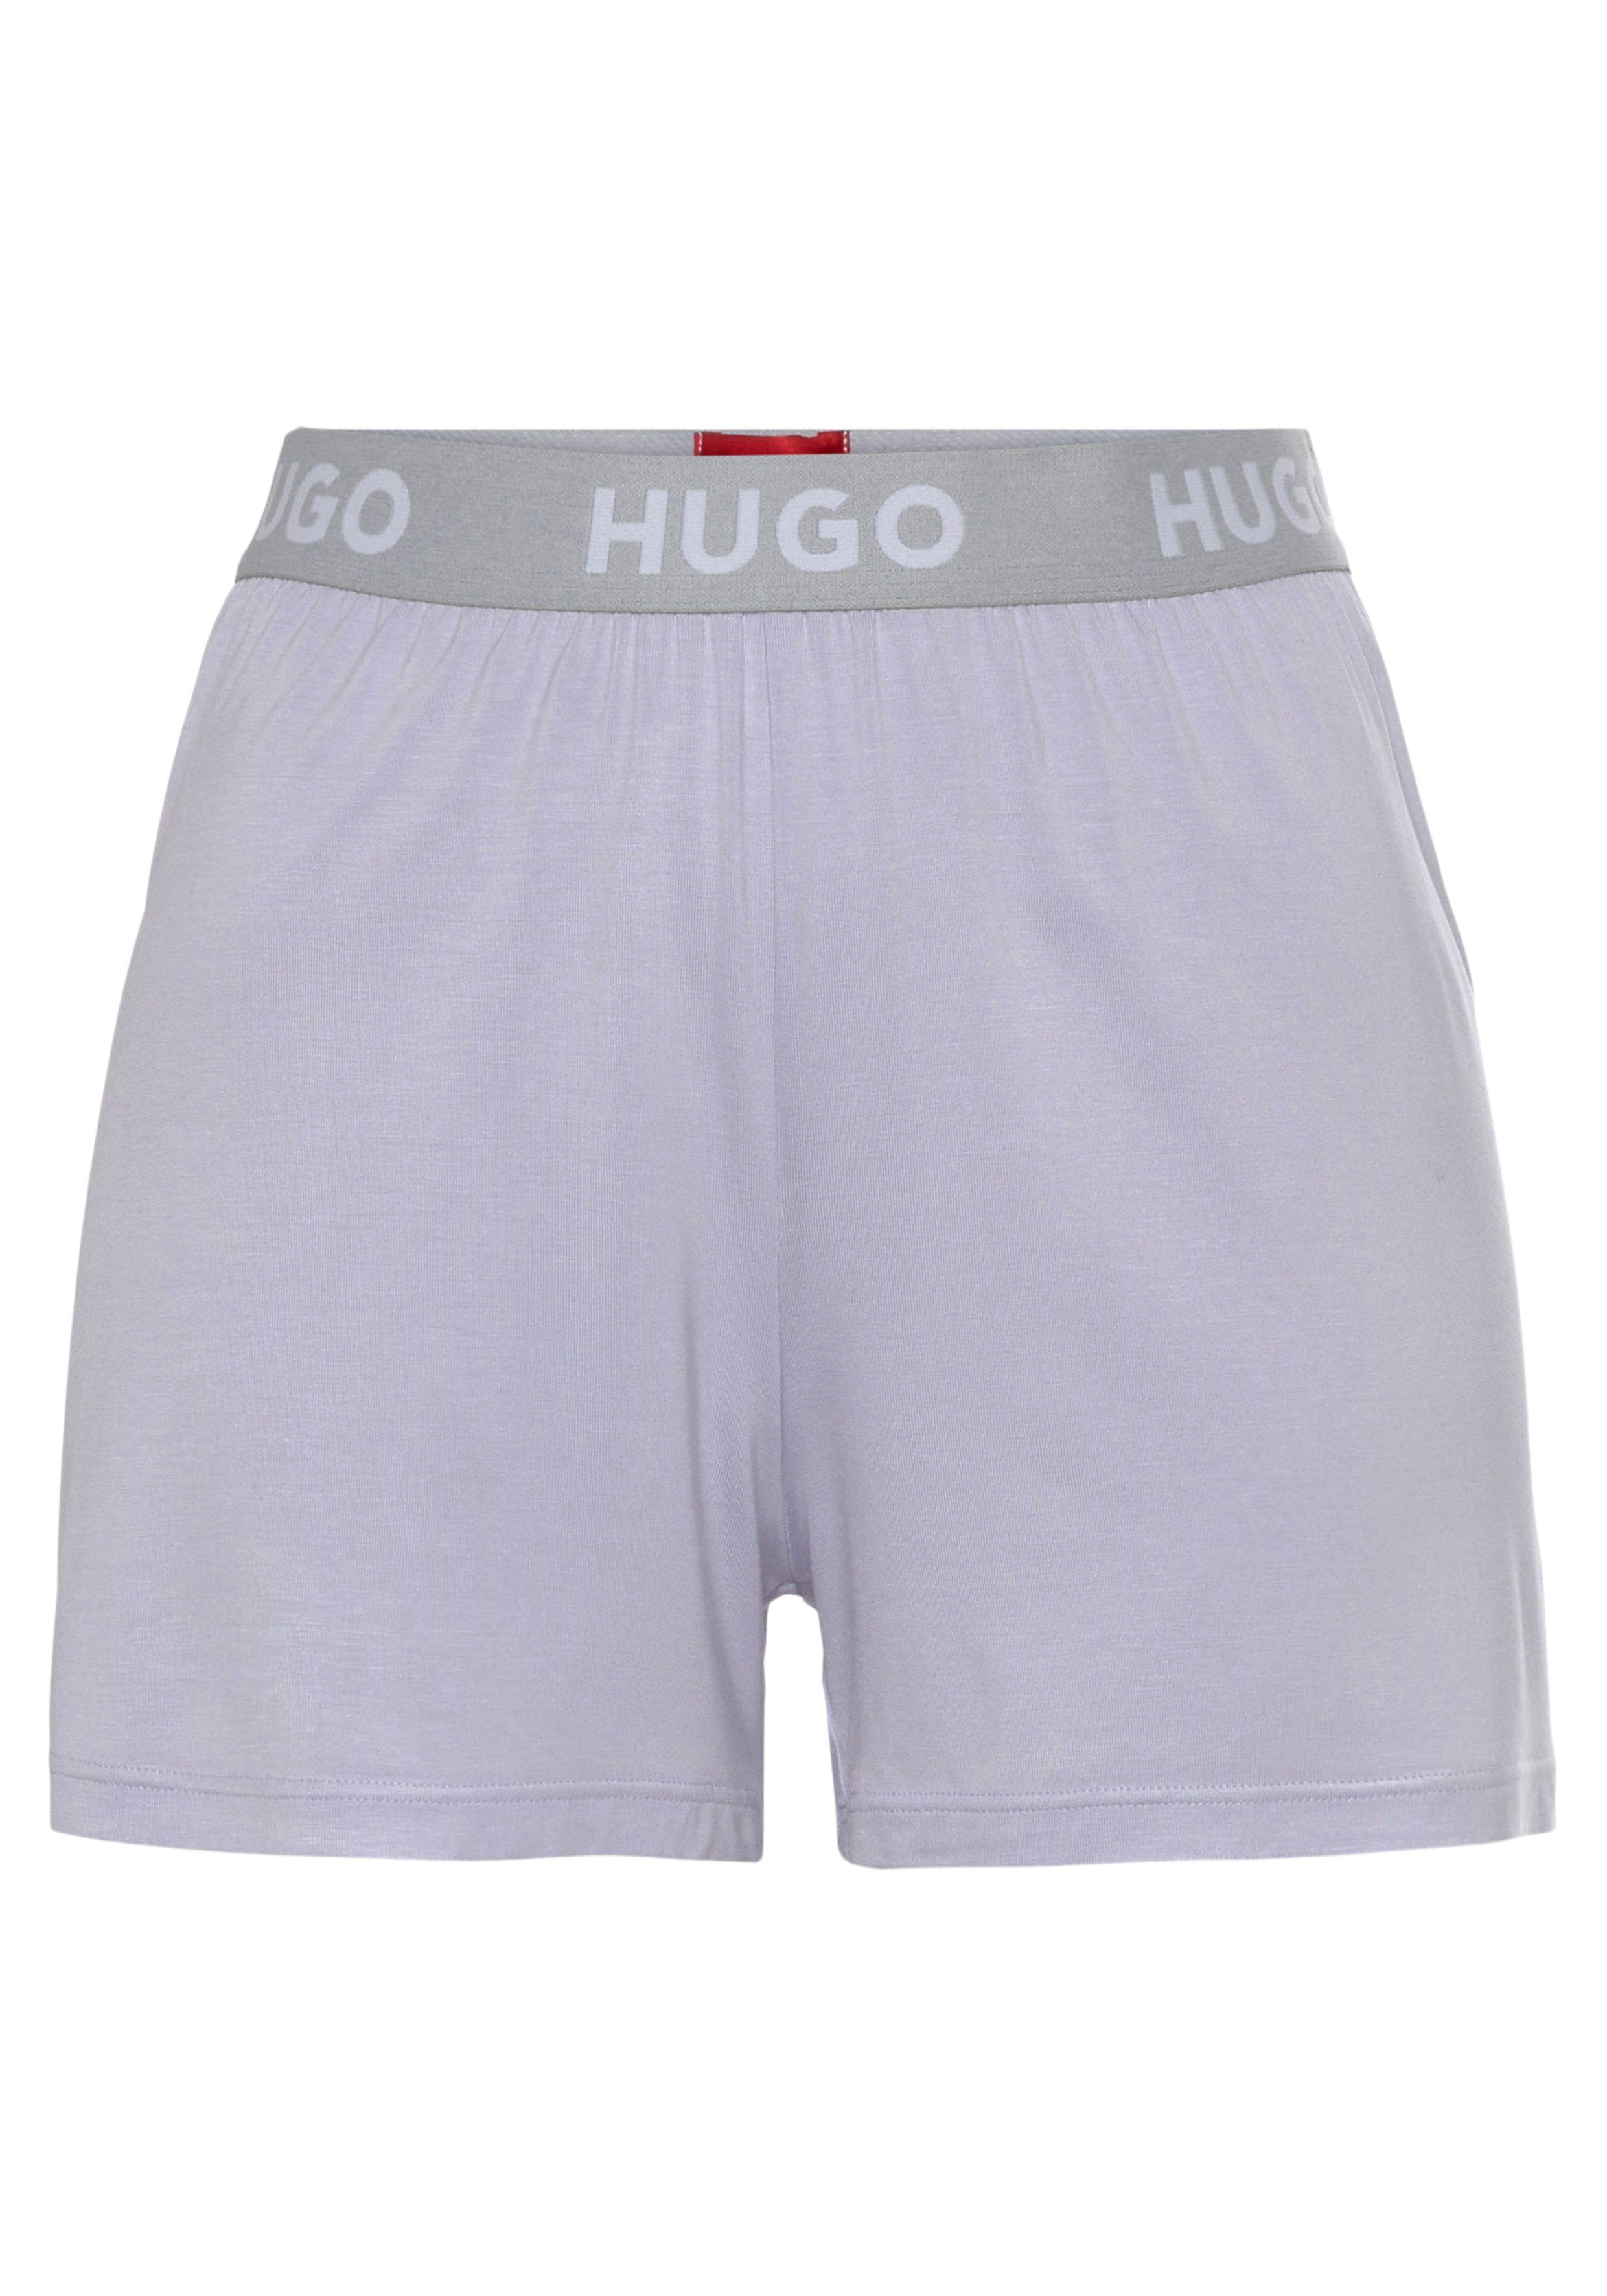 HUGO Hugo Bund UNITE_SHORTS light_pastel_purple535 Logo-Elastiktape mit am Schlafshorts